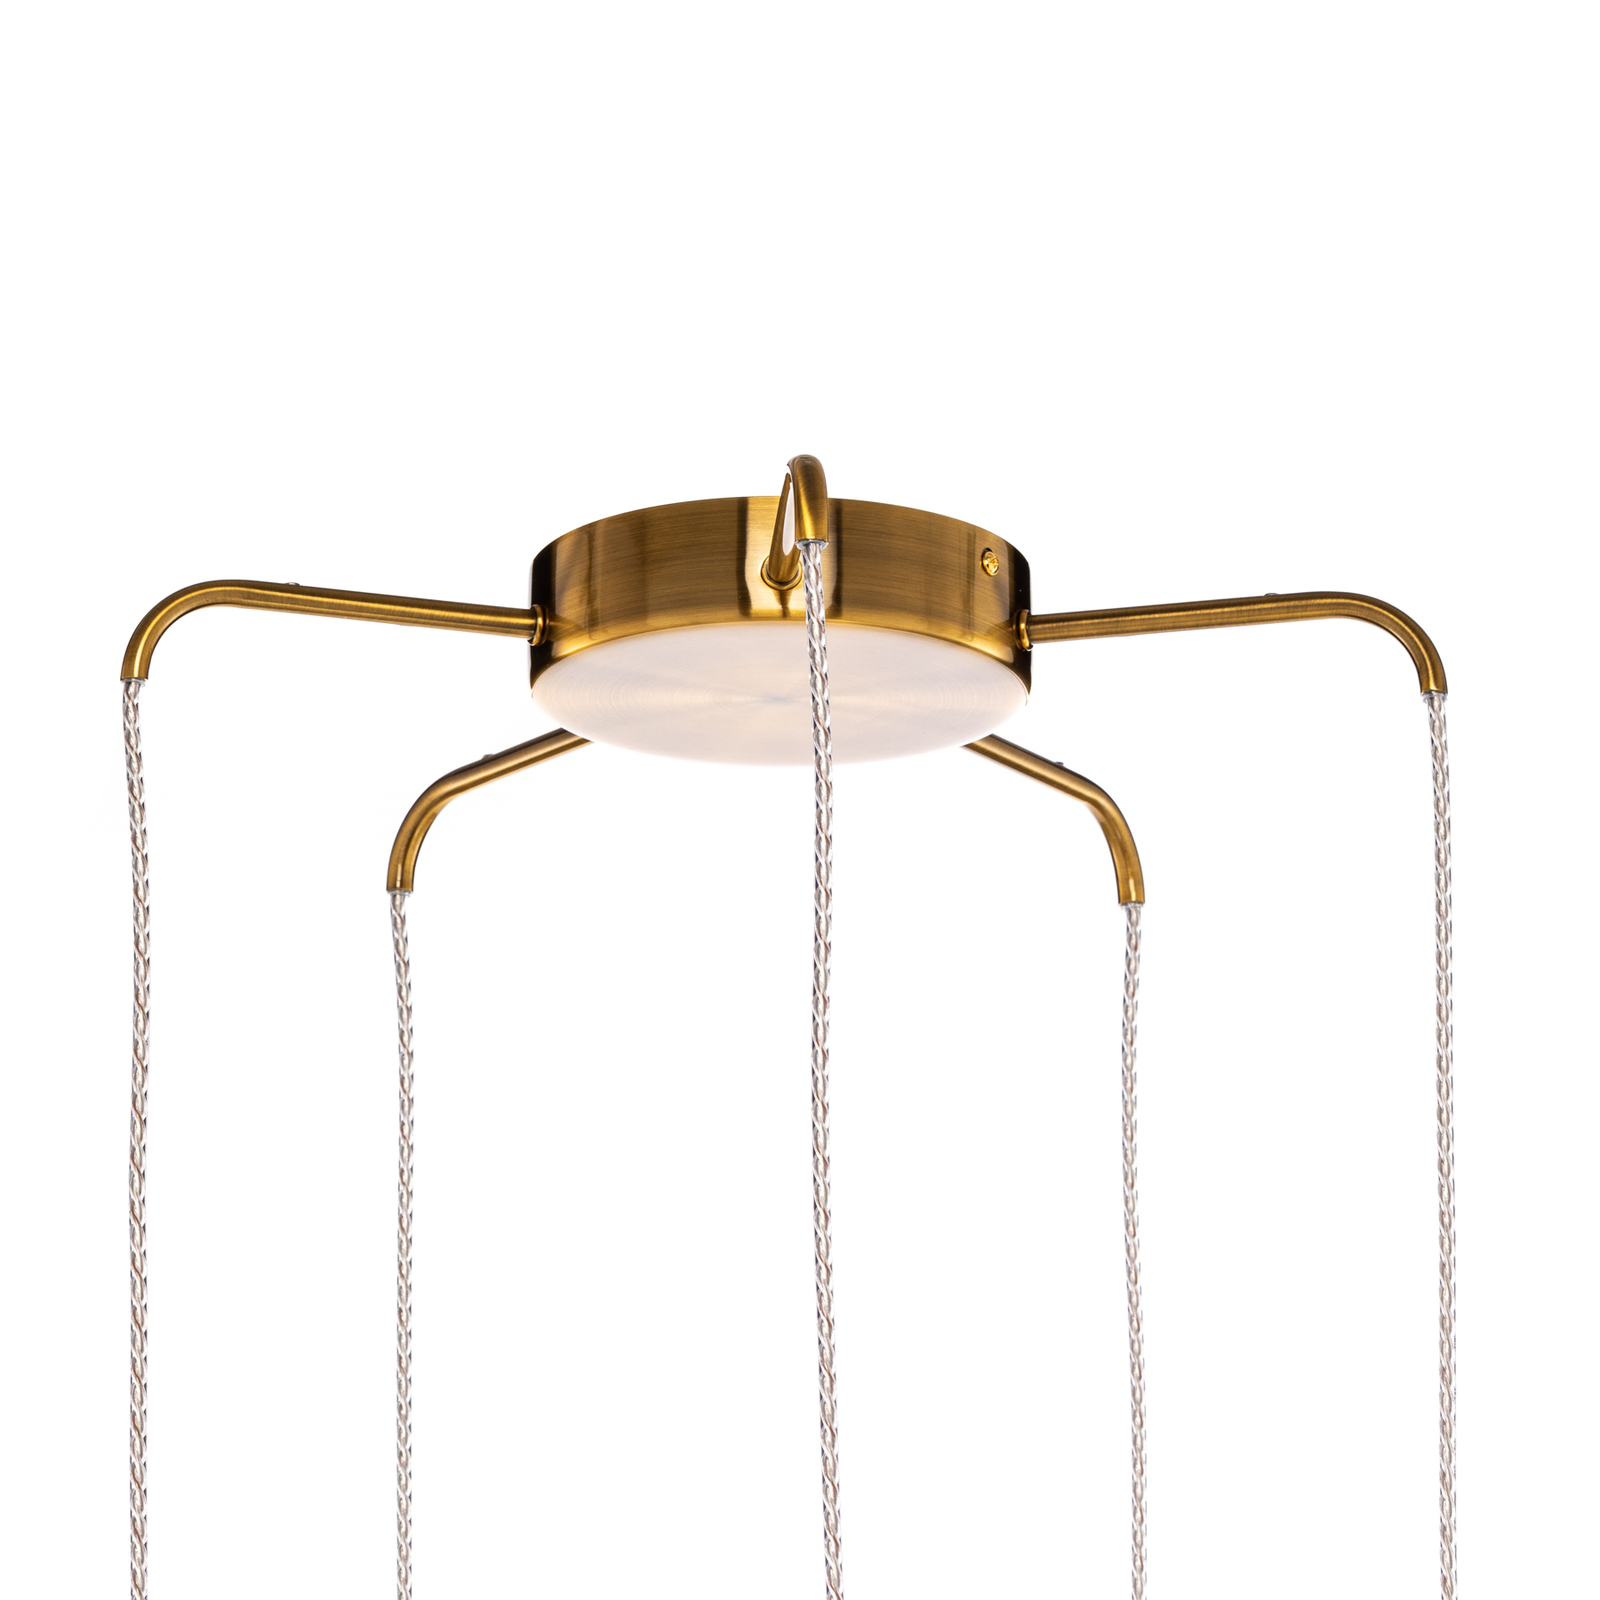 Lucande Freylin pendant light, 5-bulb, amber, glass, 48 cm